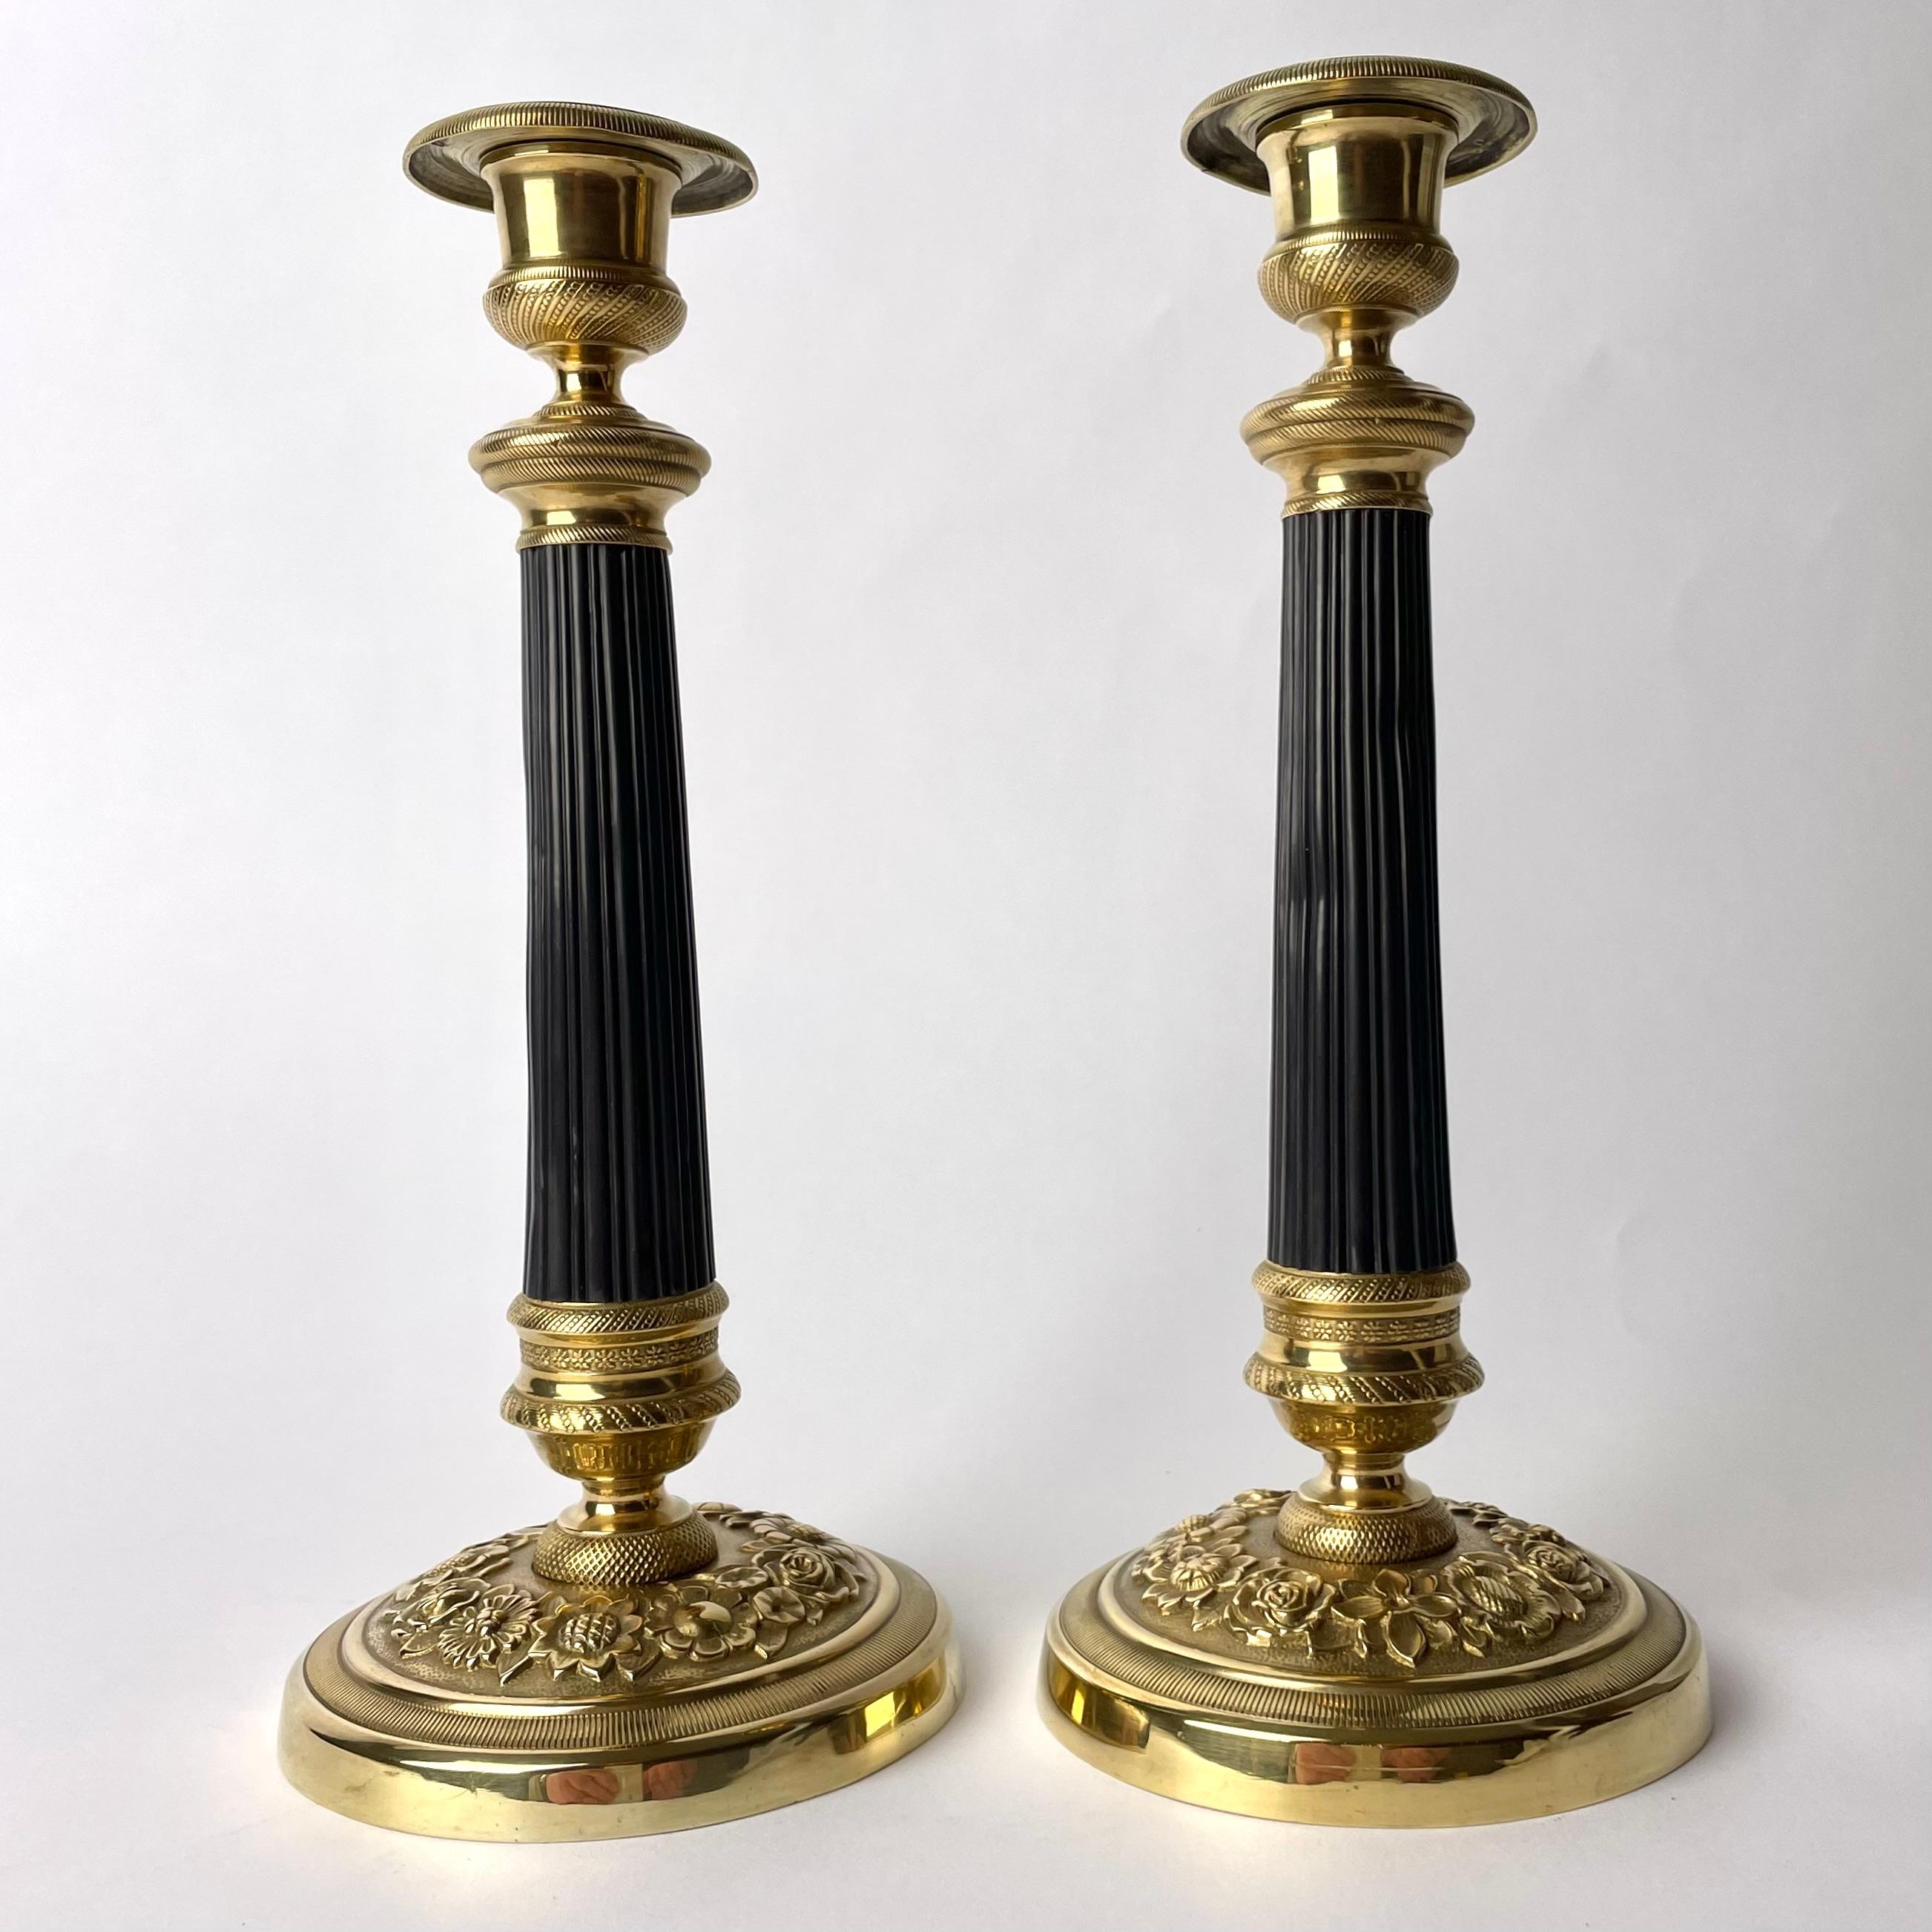 Paar Empire-Kerzenleuchter aus vergoldeter und dunkel patinierter Bronze. Hergestellt in Frankreich in den 1820er Jahren. Schön verziert mit Blumen und einer dunkel patinierten Säule in der Mitte des Leuchters.

Abnutzung entsprechend dem Alter und